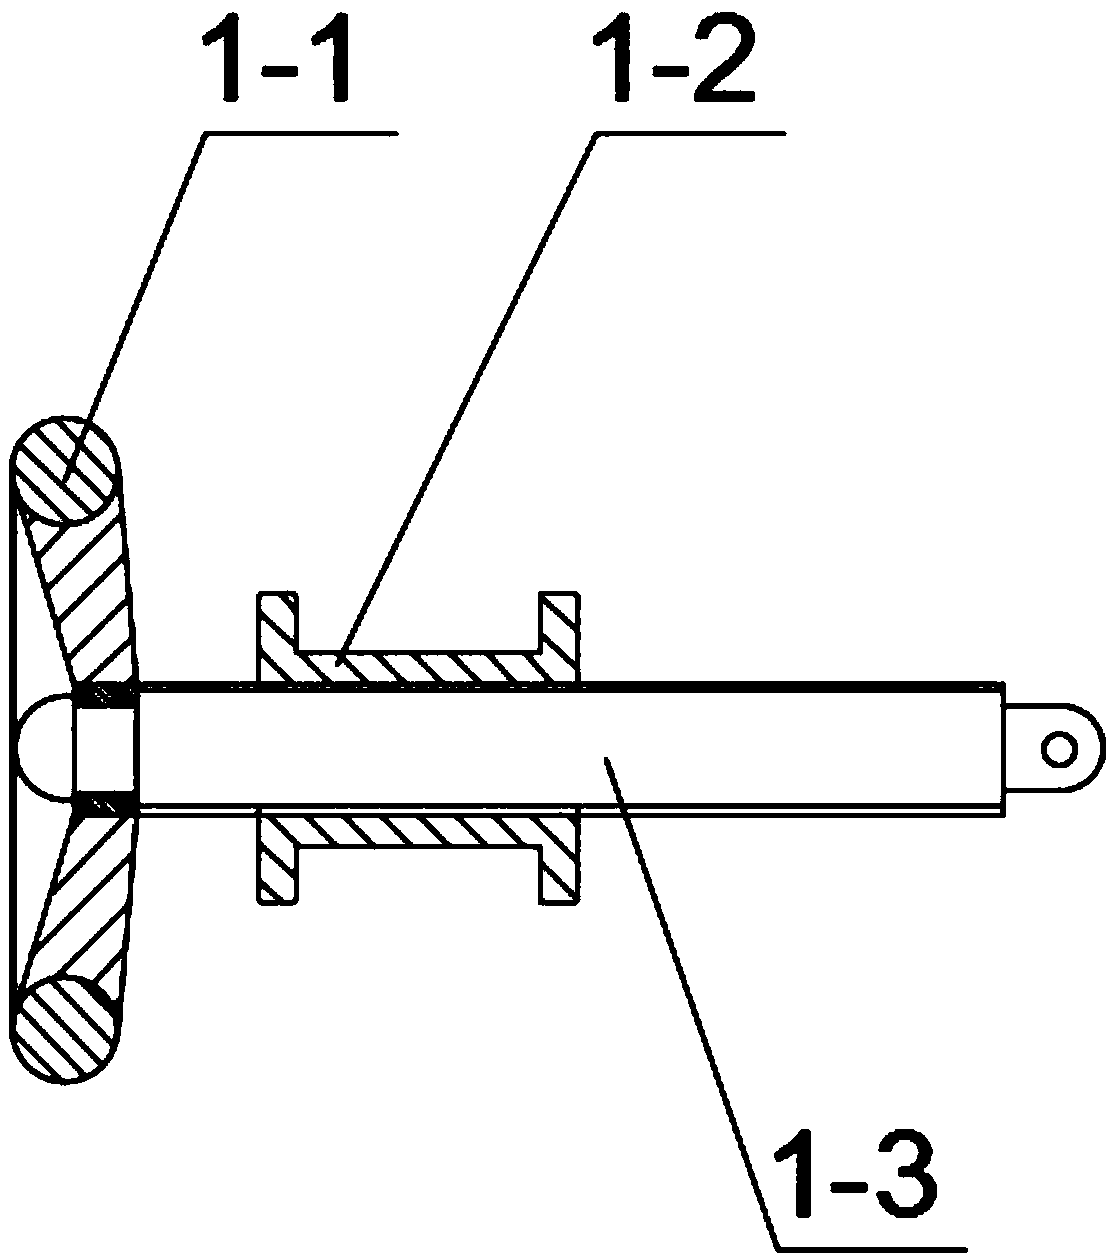 Simple manual multi-angle circular tube bending equipment